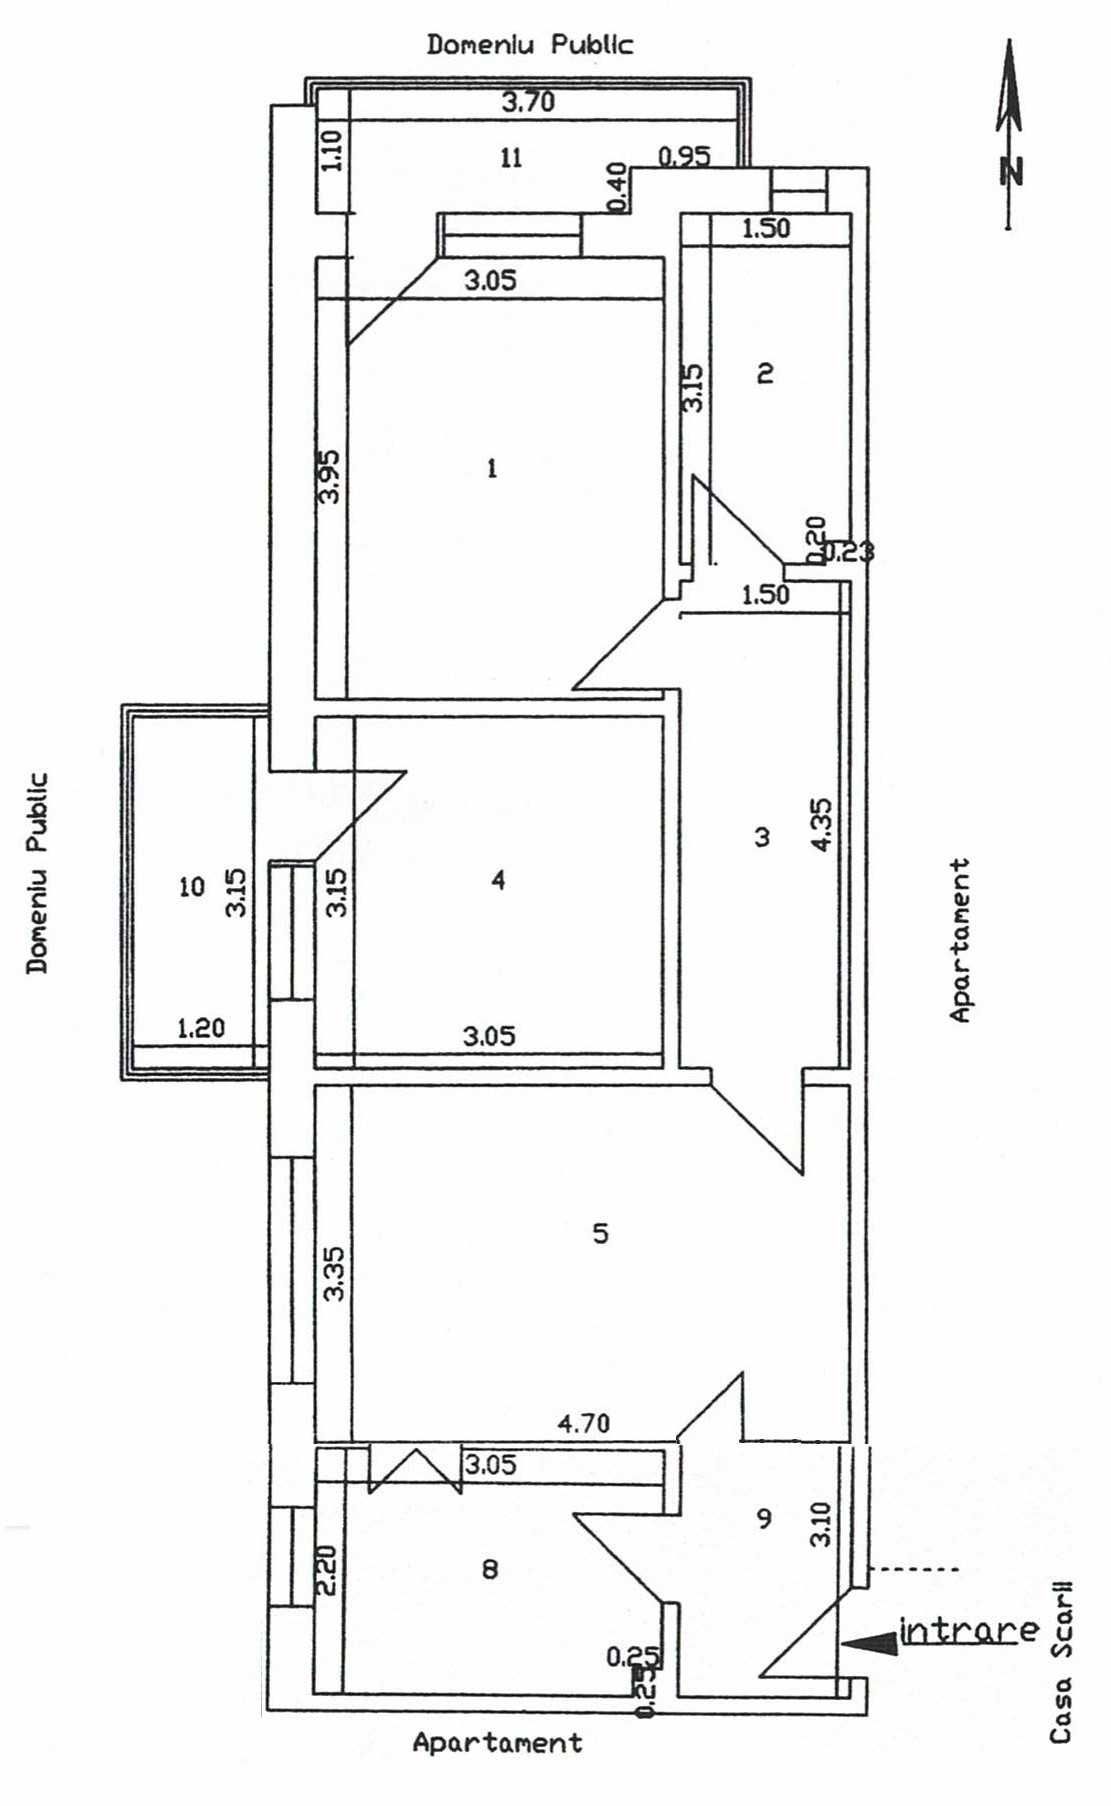 Proprietar, vând apartament 3 camere - Crihala - bloc D2